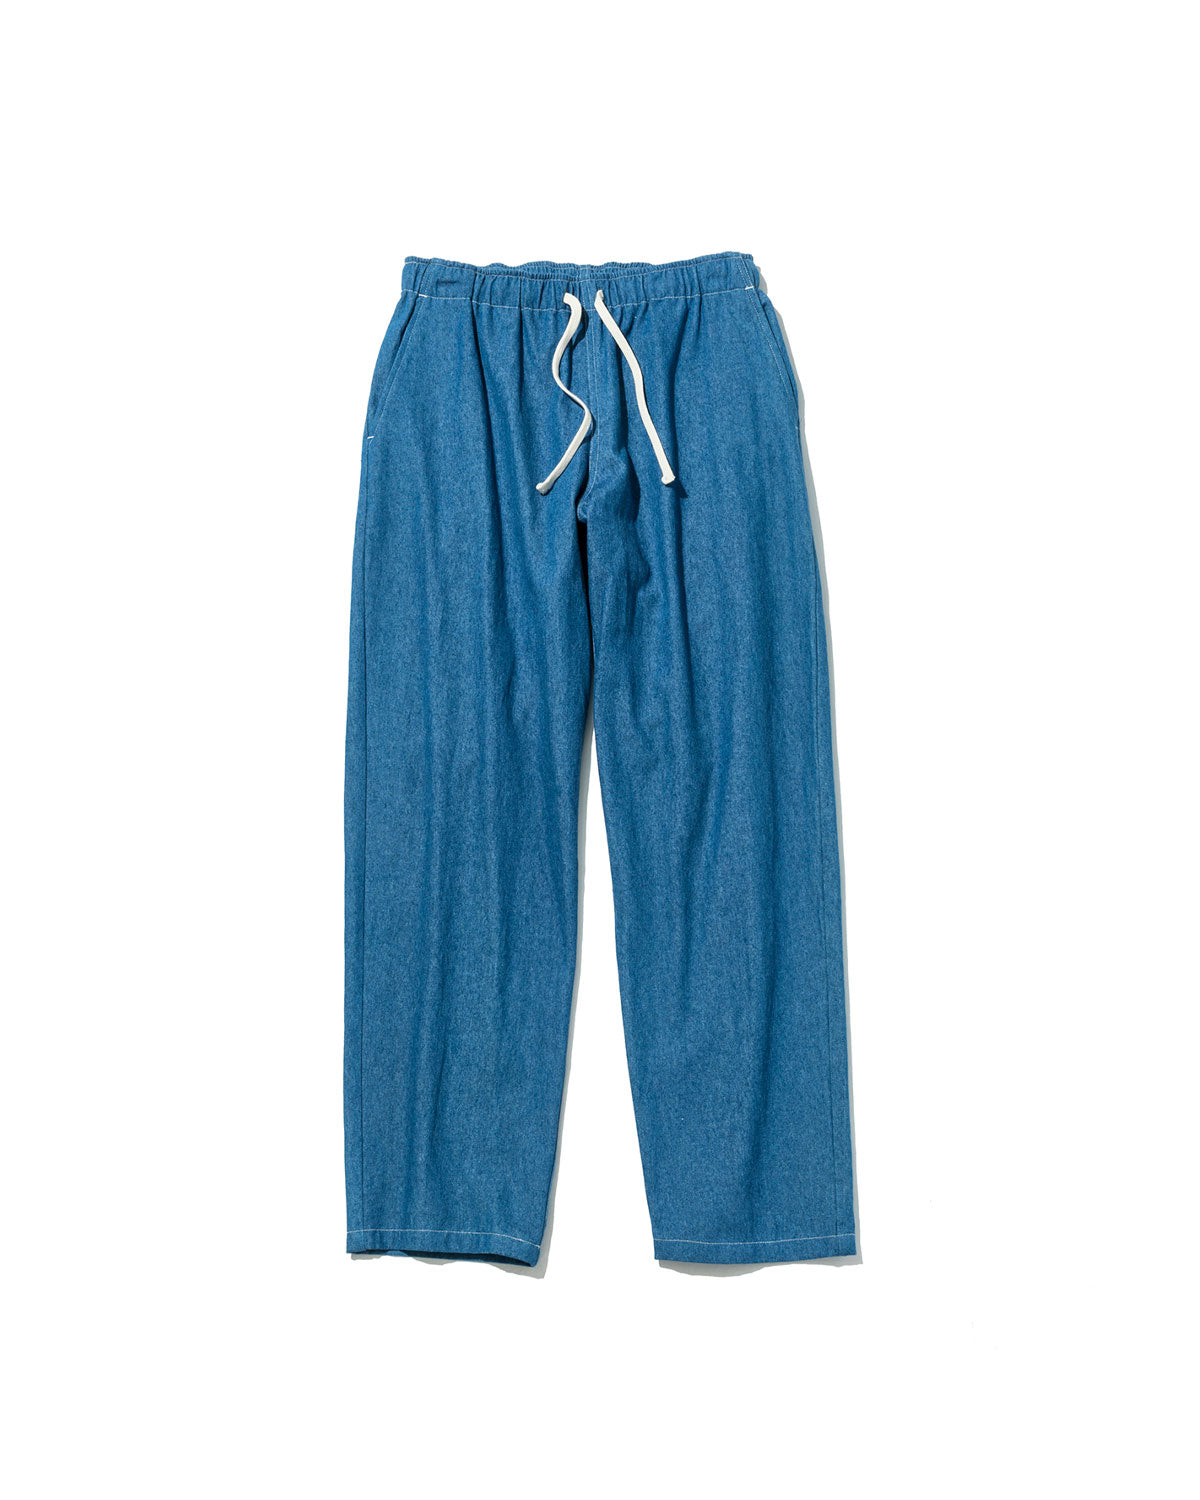 Active Lazy Pants / Denim Blue – Battenwear